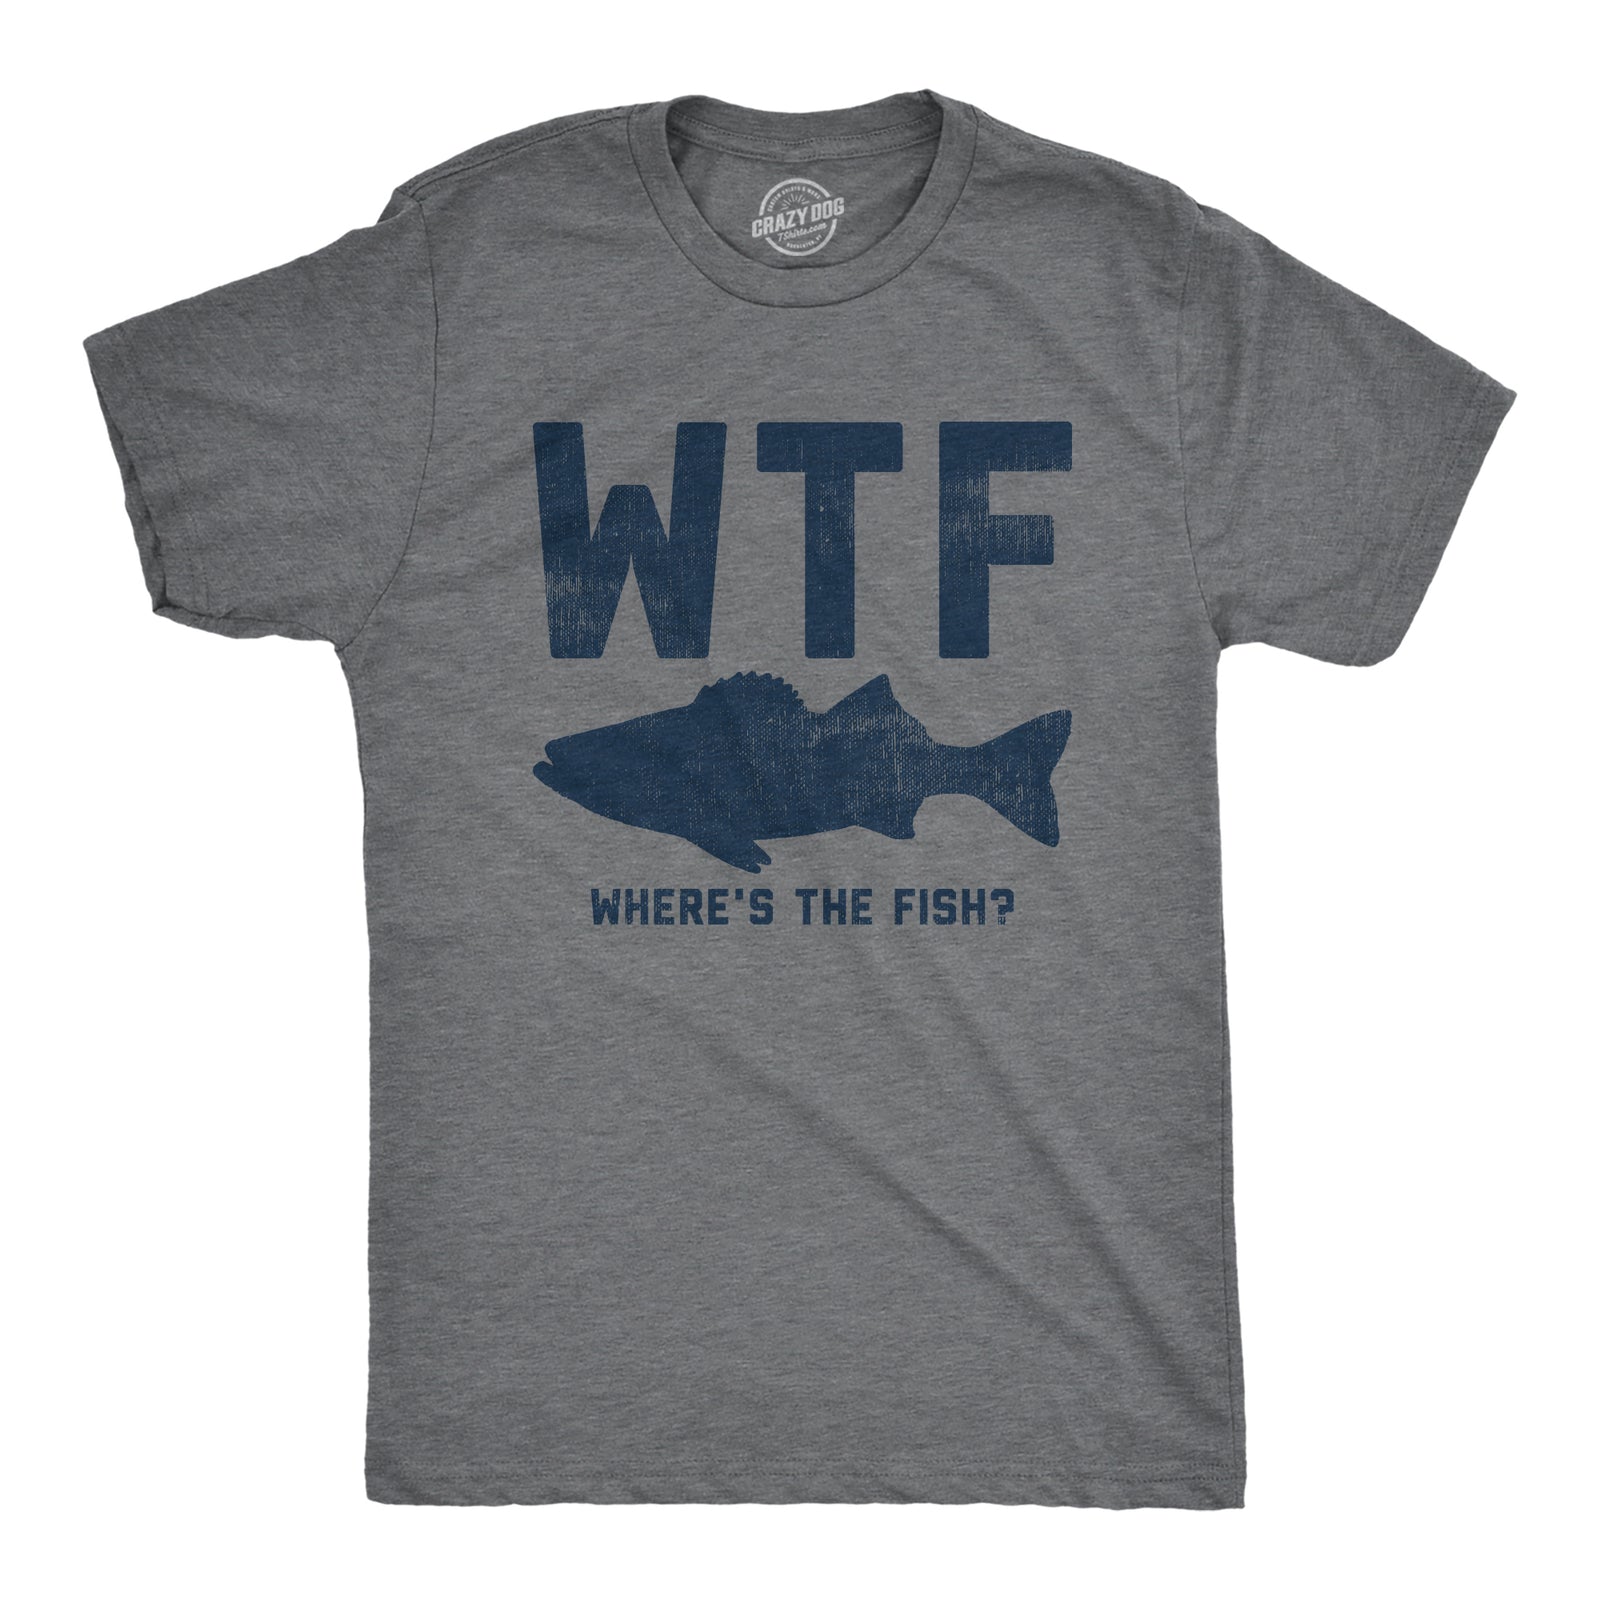 Funny Fishing Shirt Women, Fisher Shirt, Fisherman Shirts, Fishing T-shirt,  Fisherman Gifts, Fishing Lover, Fishing Tee, Fly Fishing Shirts 